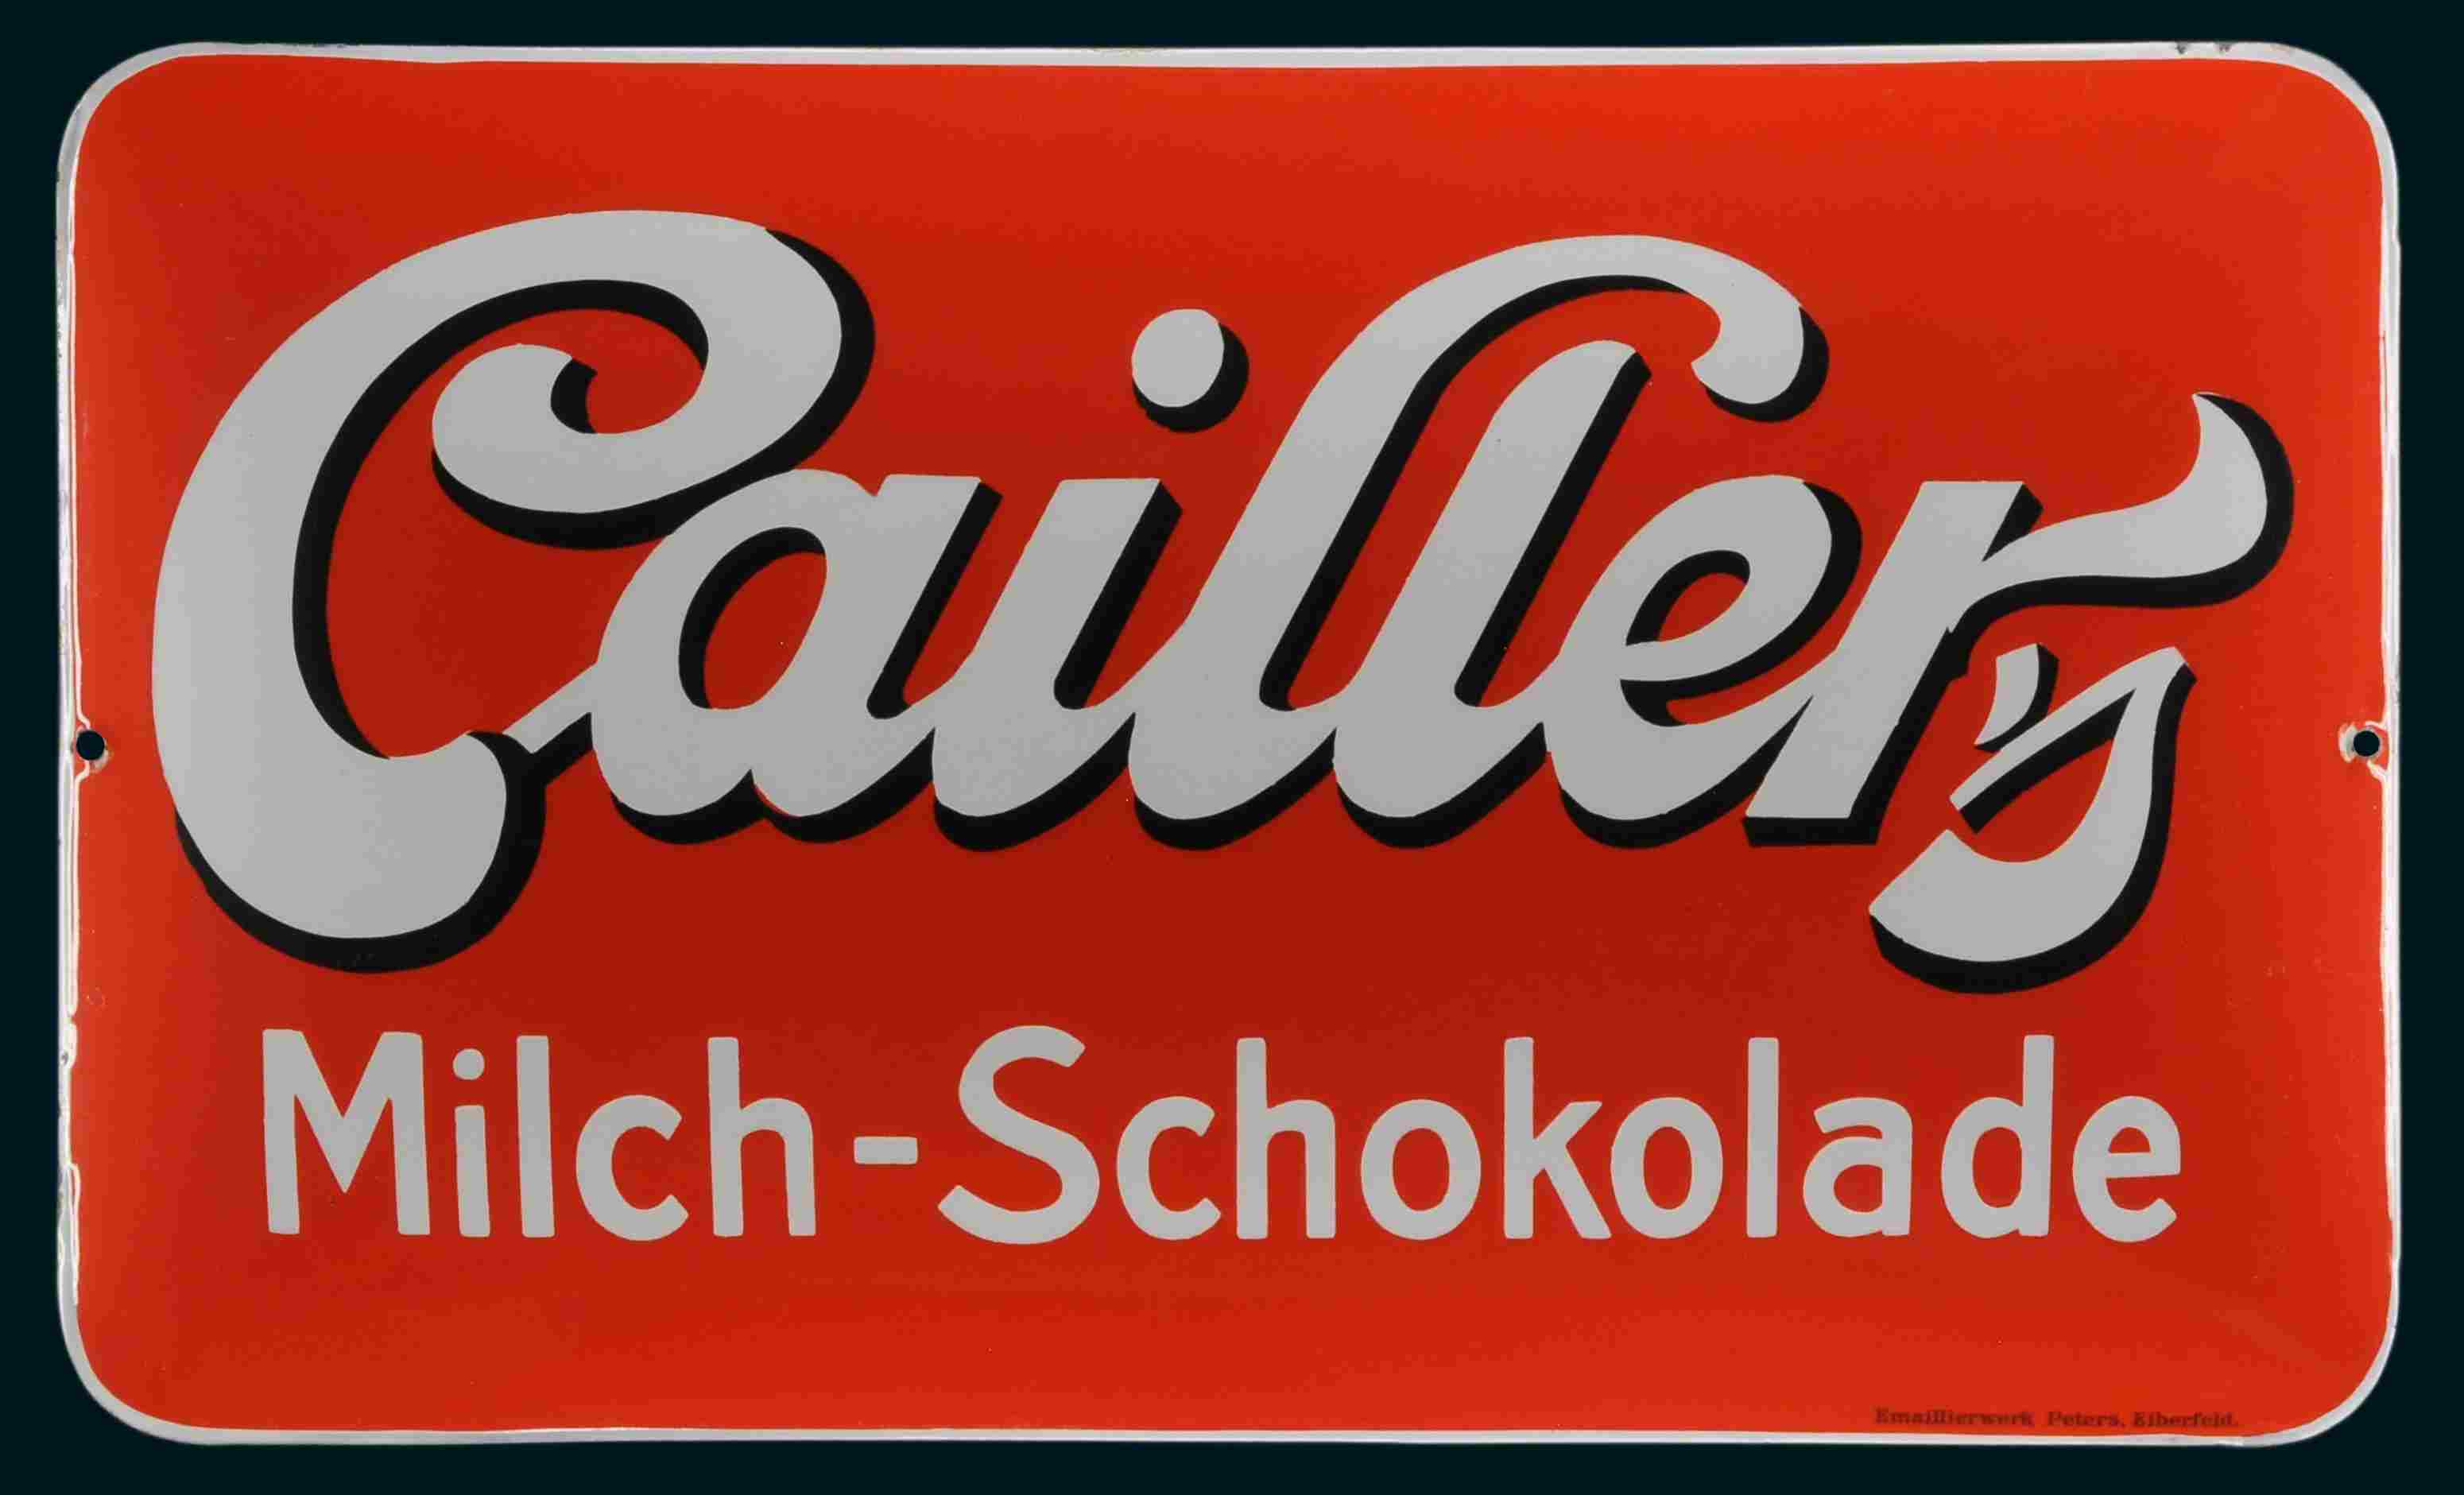 Cailler Milch-Schokolade 